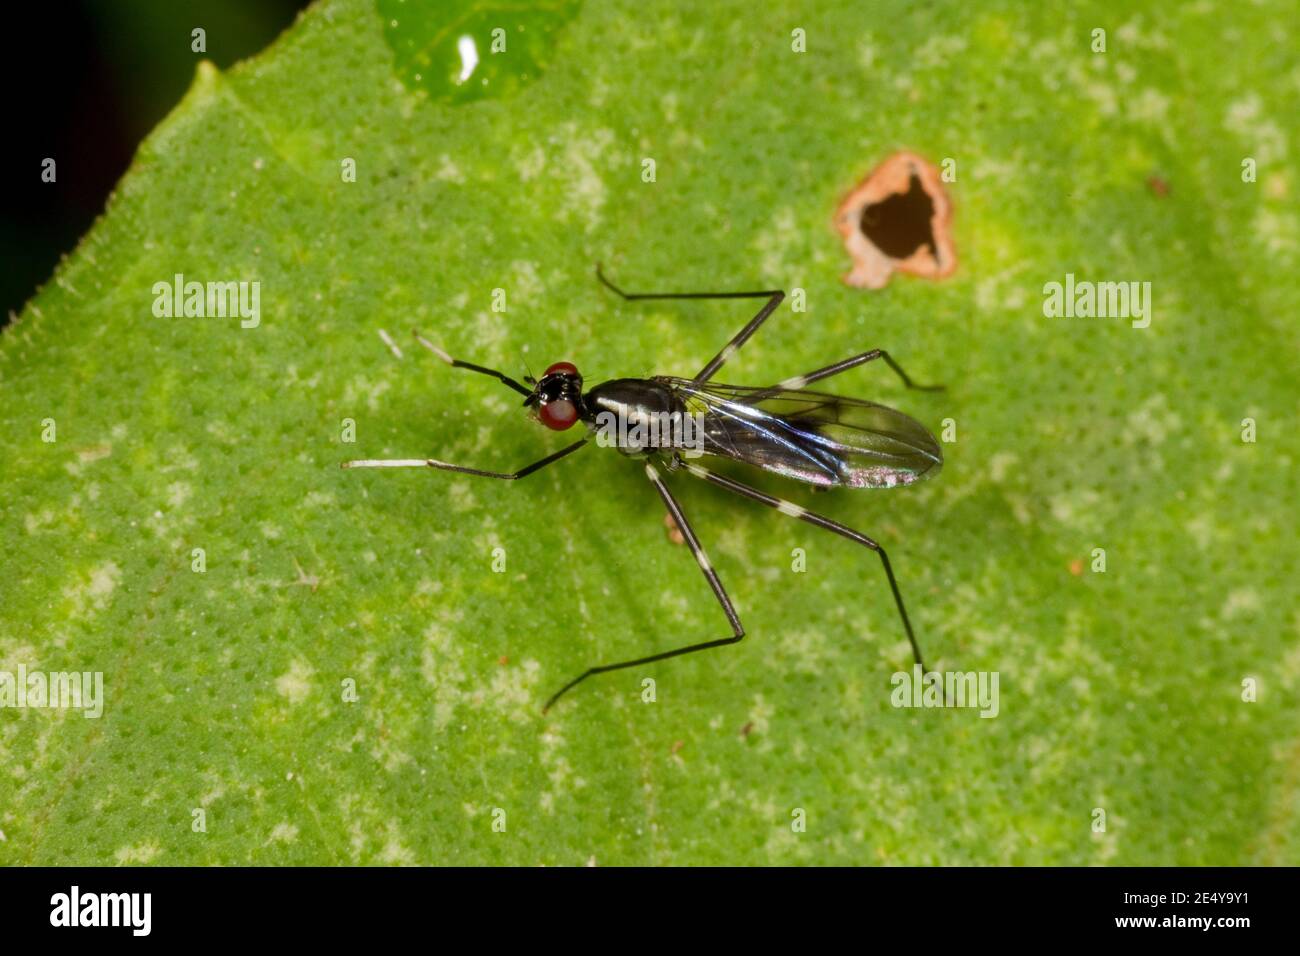 Unidentified Stilt-legged Fly, Micropezidae. Wasp-mimic. Stock Photo